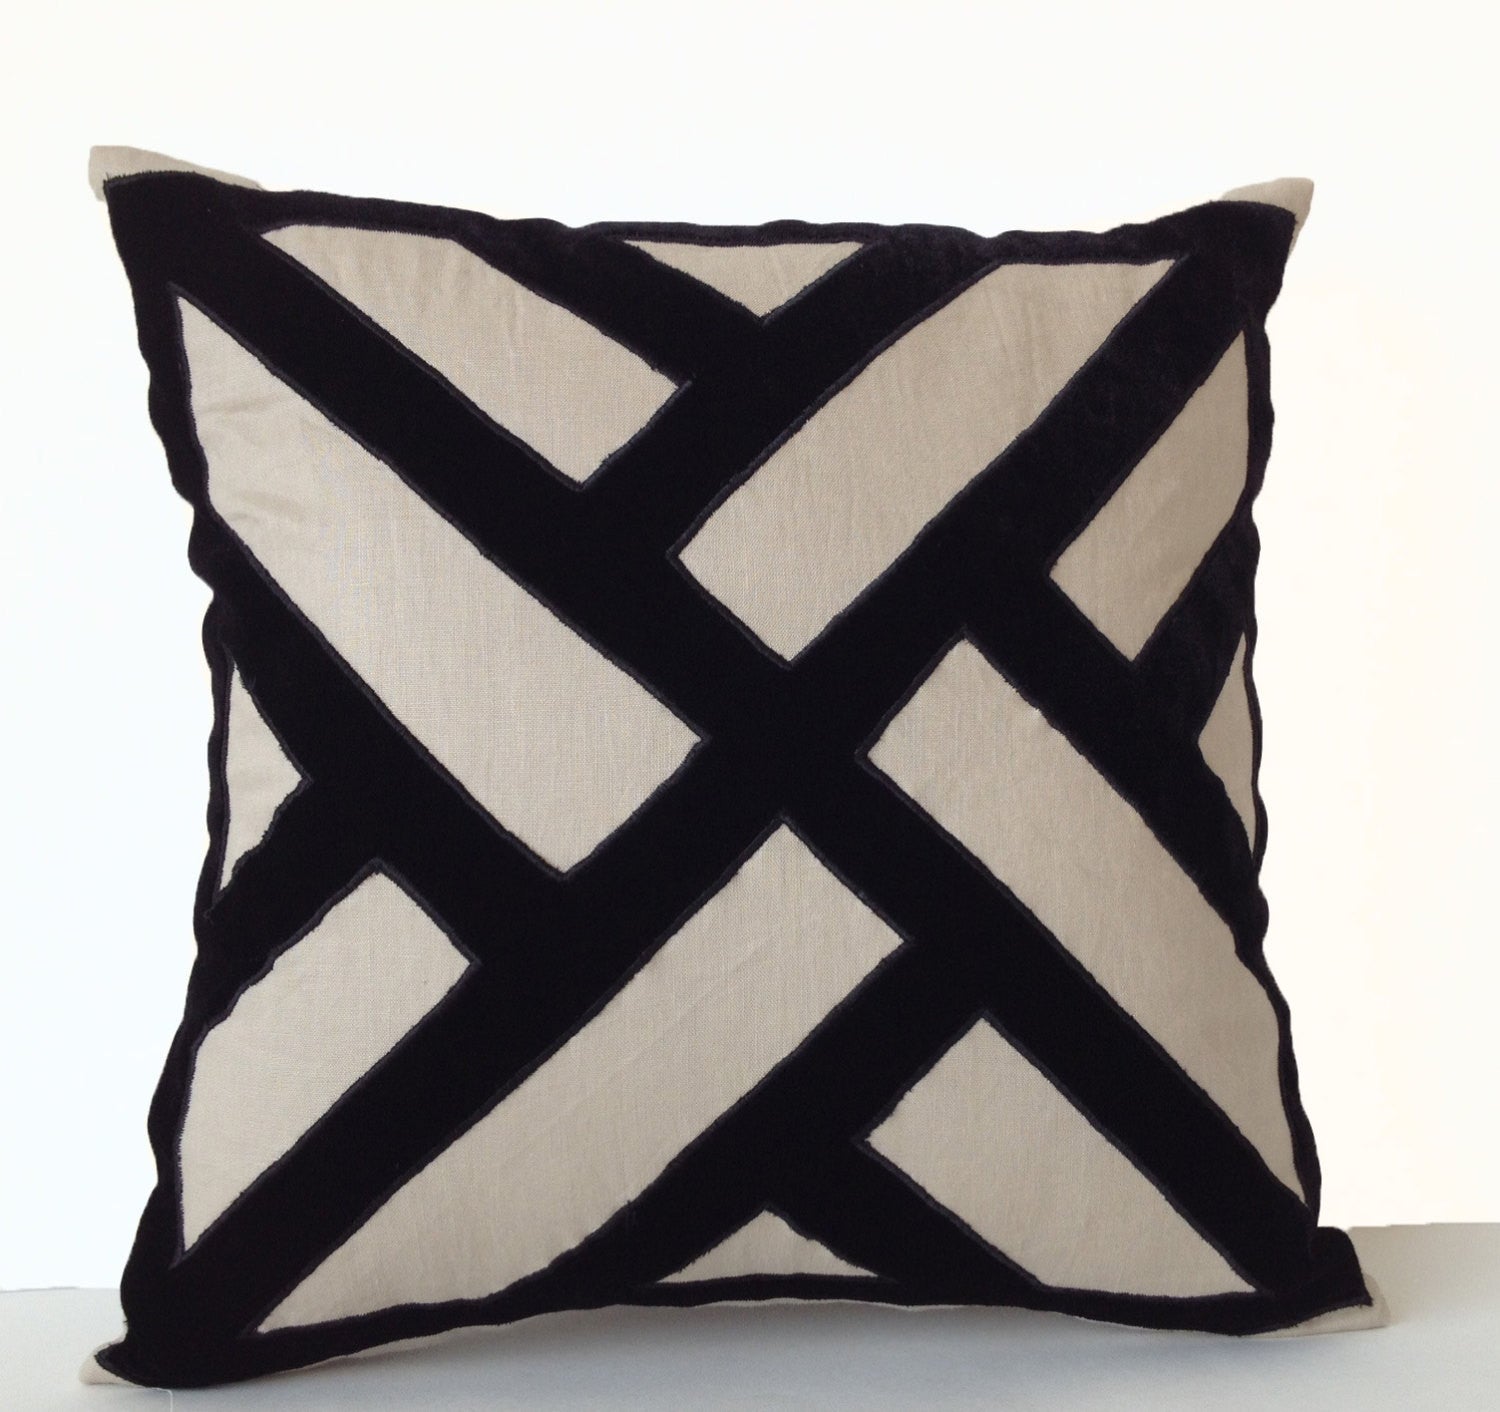 Handmade gray linen throw pillows in velvet